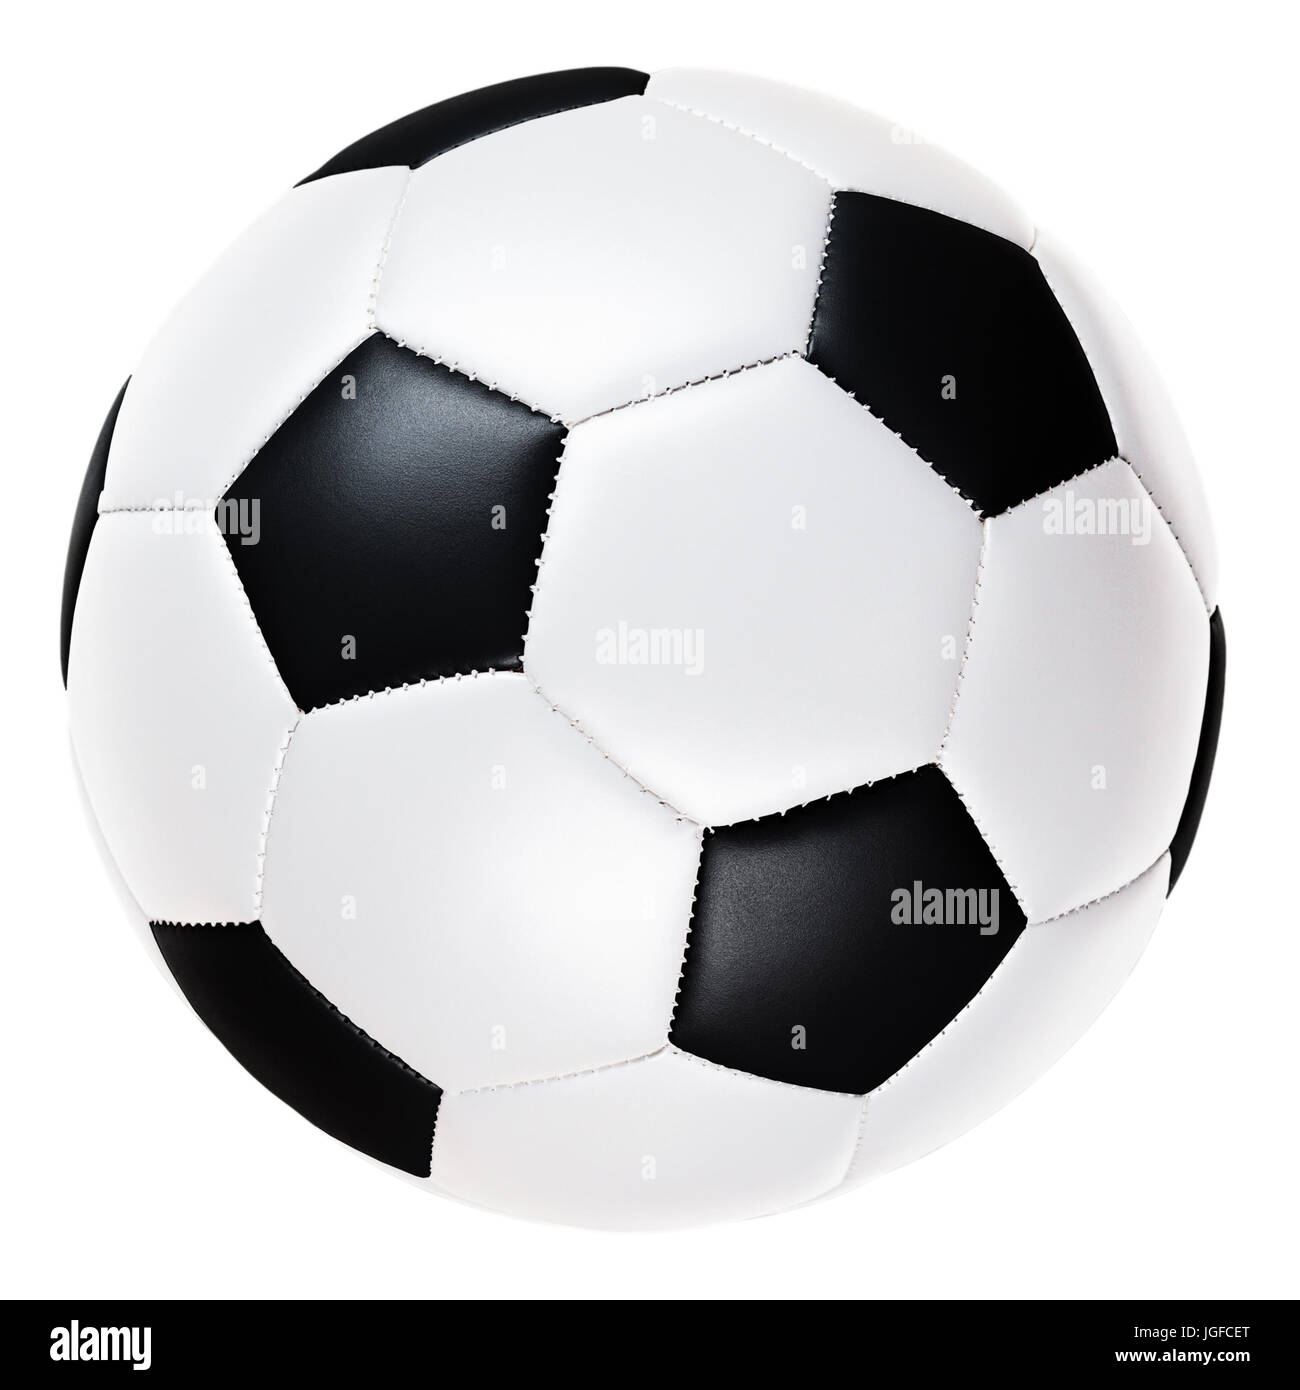 Stillleben-Image der traditionellen schwarzen und weißen Fußball Ausschneiden Stockfoto